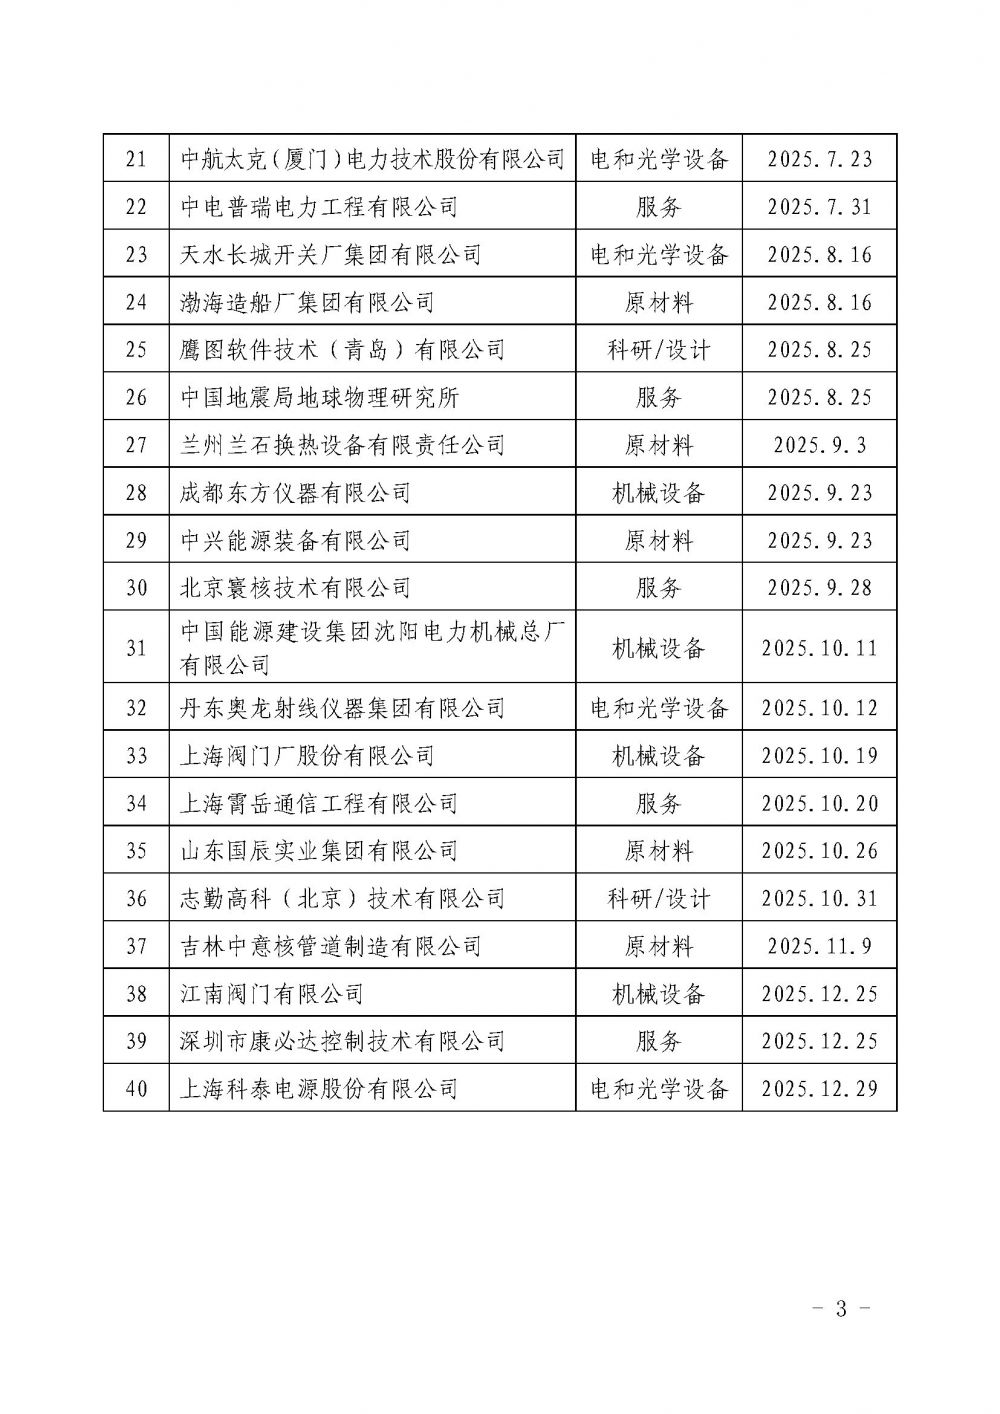 关于发布中国核能行业协会核能行业第十七批合格供应商名录的公告_页面_3.jpg